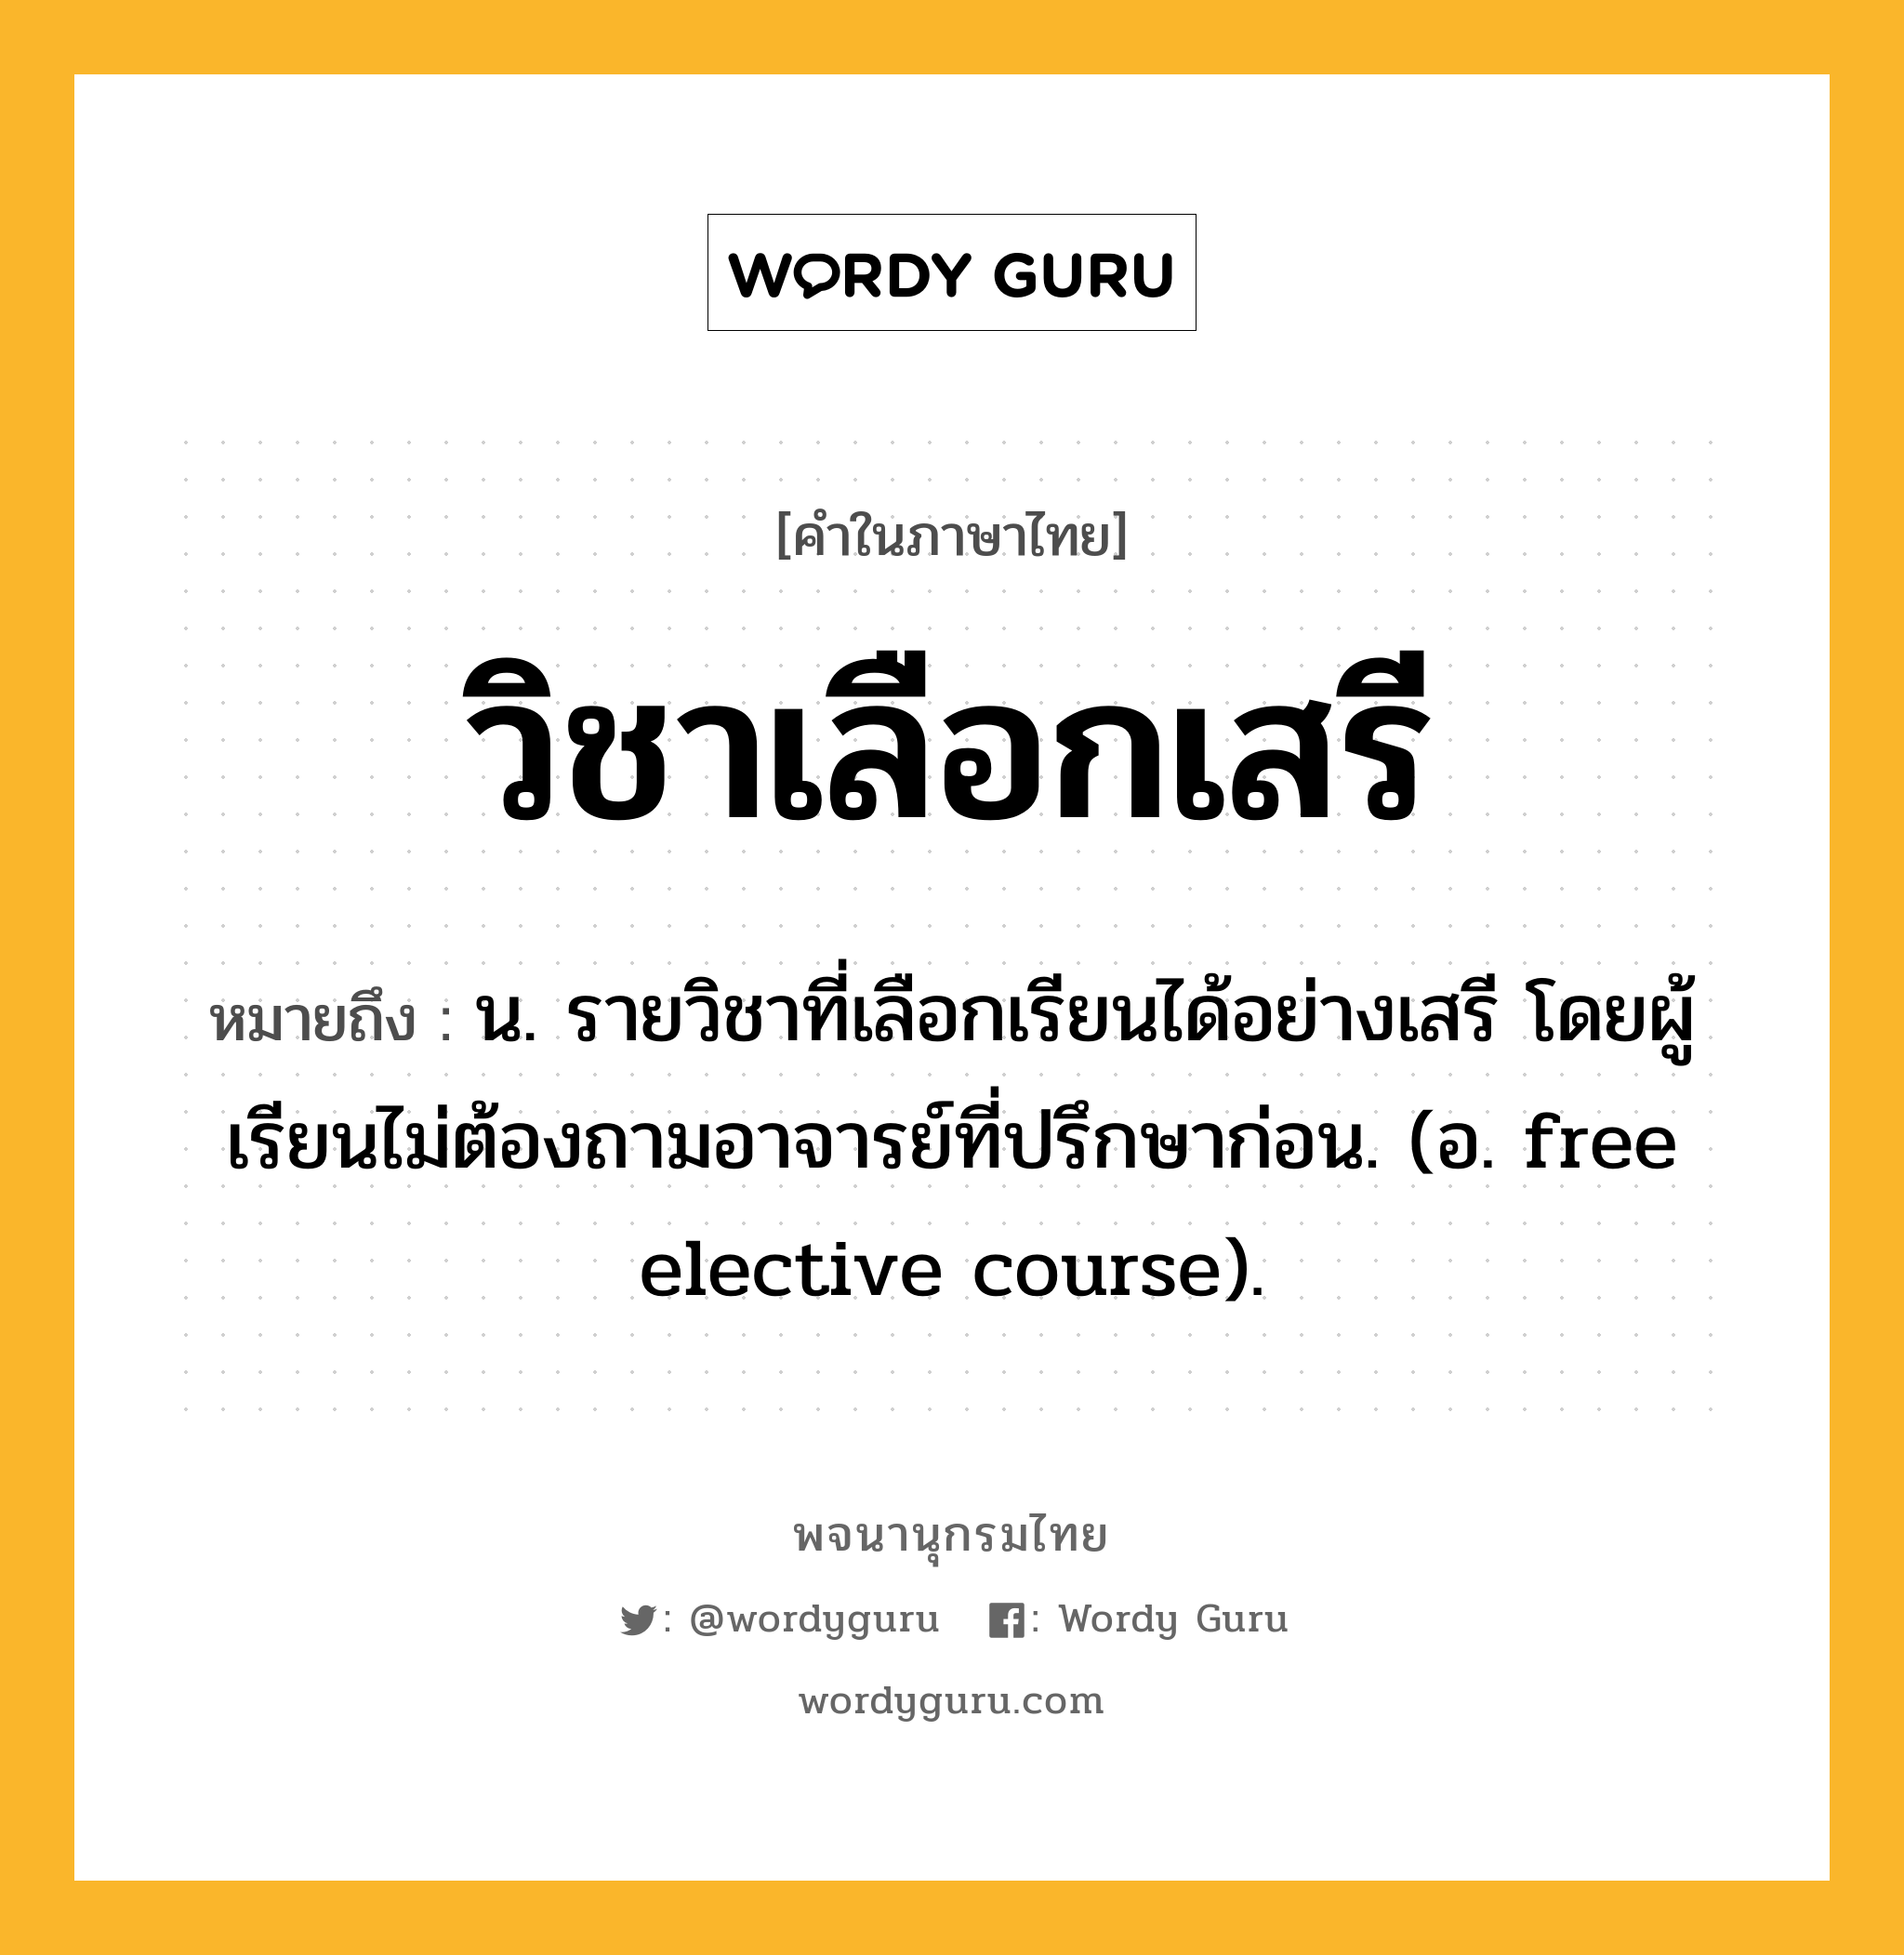 วิชาเลือกเสรี หมายถึงอะไร?, คำในภาษาไทย วิชาเลือกเสรี หมายถึง น. รายวิชาที่เลือกเรียนได้อย่างเสรี โดยผู้เรียนไม่ต้องถามอาจารย์ที่ปรึกษาก่อน. (อ. free elective course).